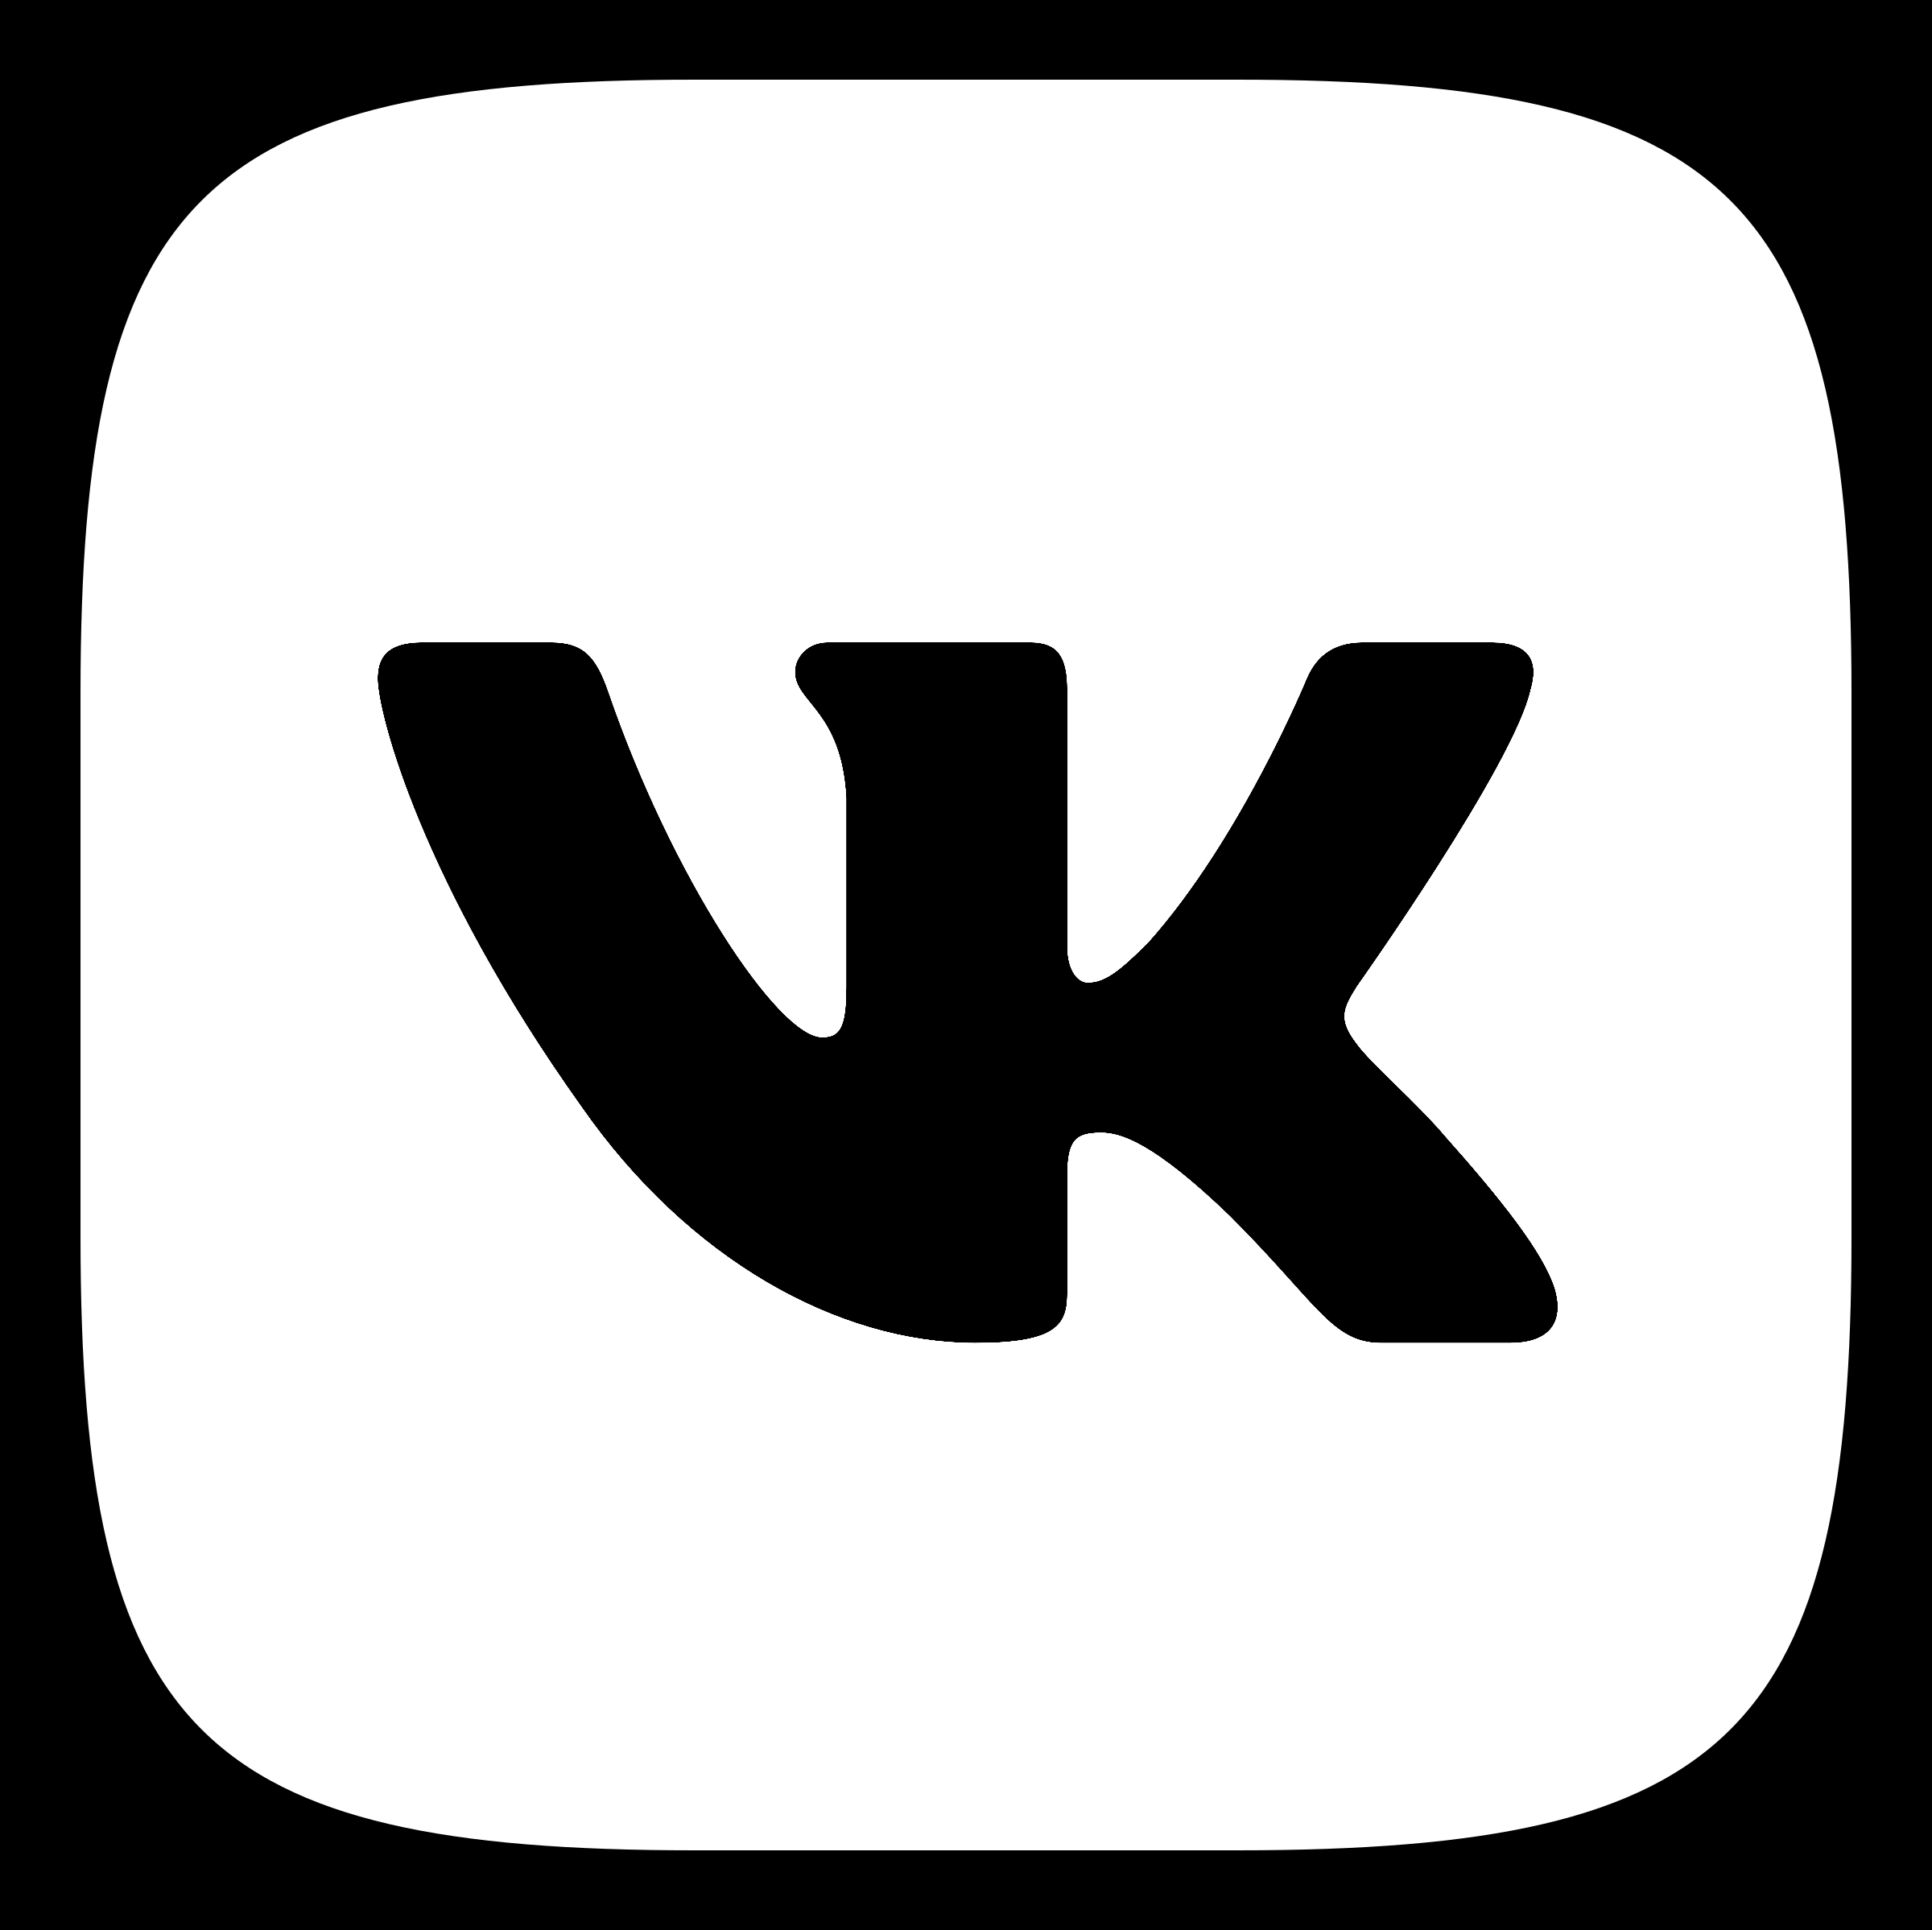 VK Logo - VK Logo PNG Transparent & SVG Vector - Freebie Supply